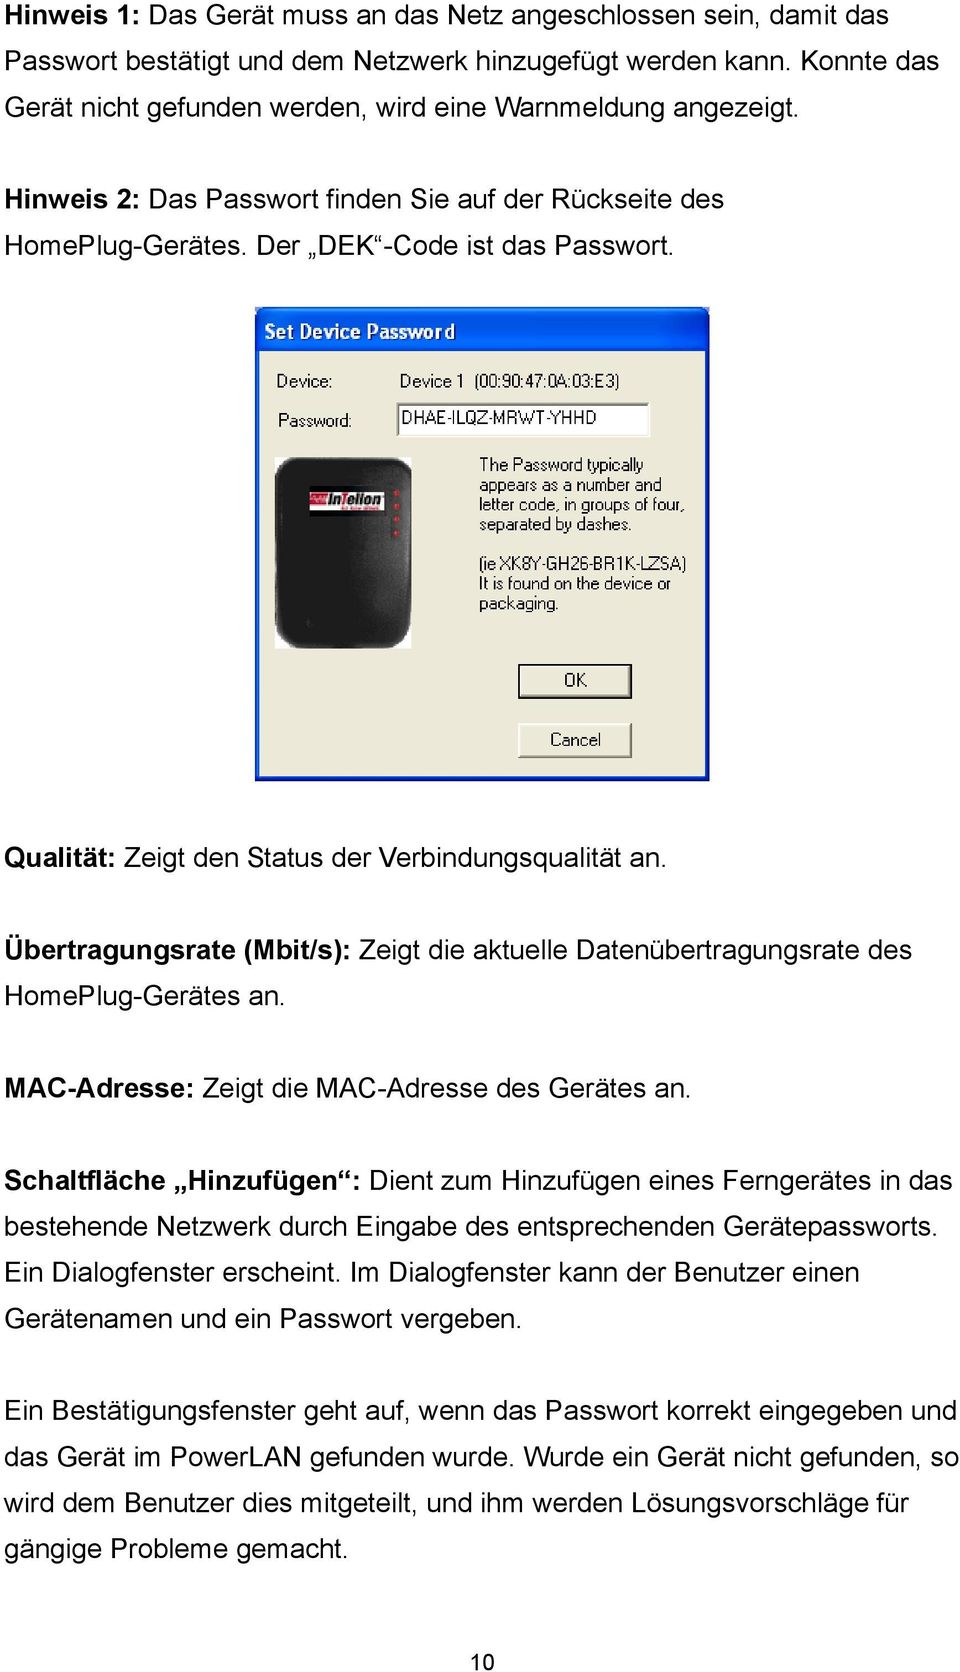 Qualität: Zeigt den Status der Verbindungsqualität an. Übertragungsrate (Mbit/s): Zeigt die aktuelle Datenübertragungsrate des HomePlug-Gerätes an. MAC-Adresse: Zeigt die MAC-Adresse des Gerätes an.